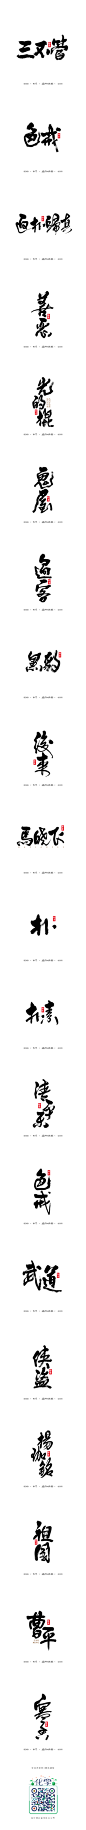 書法字记 · 贰拾伍-字体传奇网-中国首个字体品牌设计师交流网